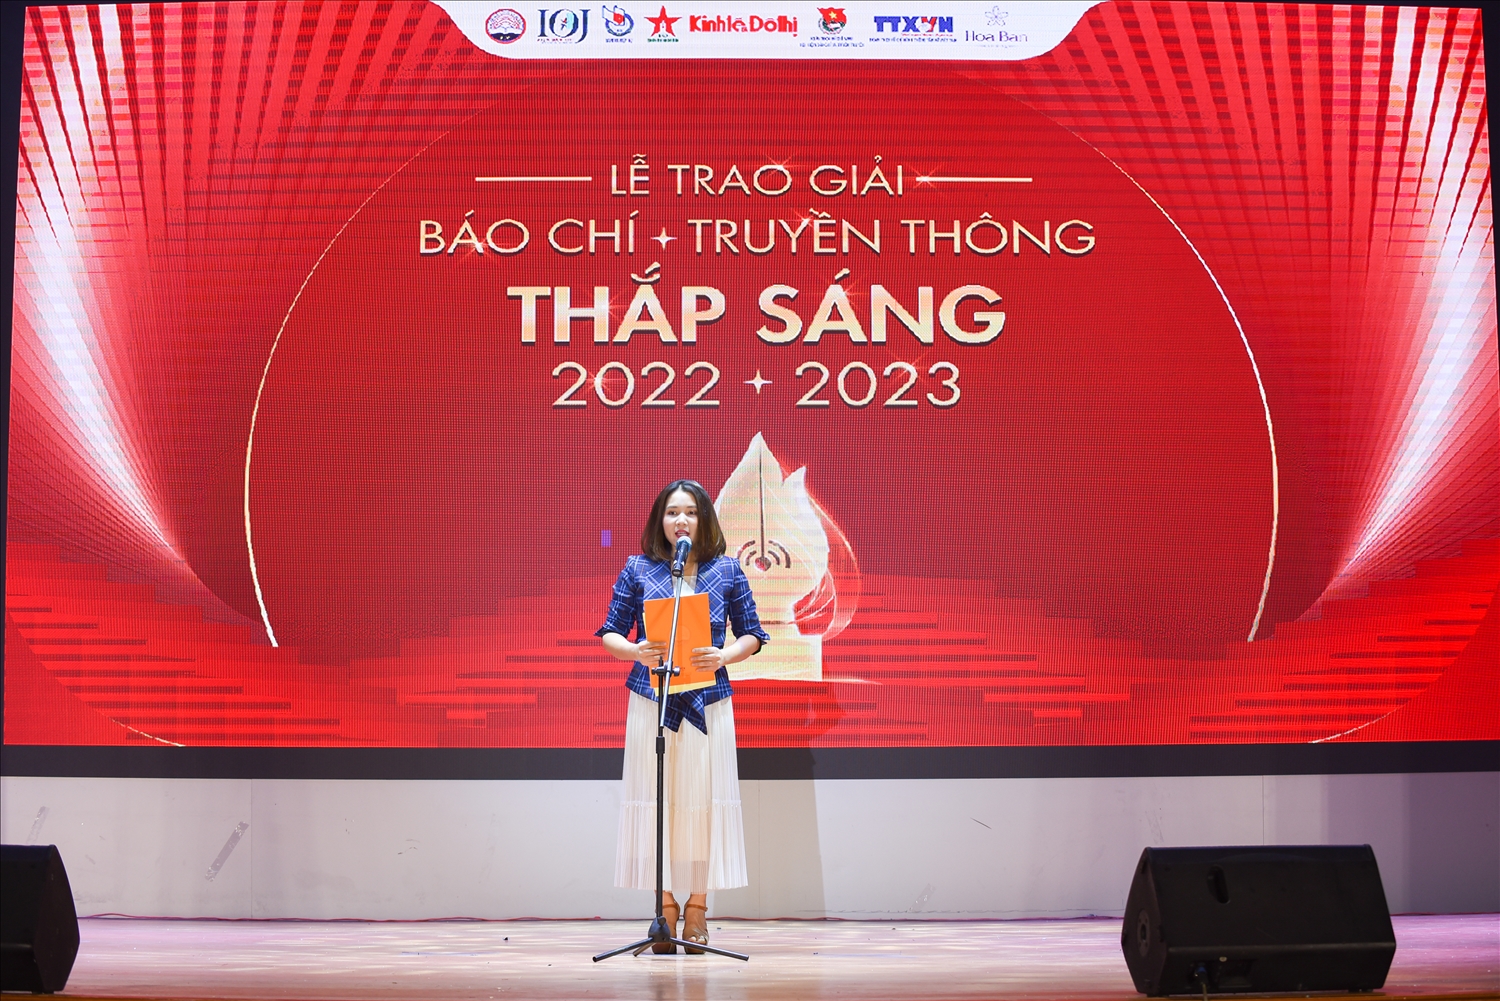 Tiến sĩ Lê Thu Hà, Phó viện trưởng viện Báo chí, Học viện Báo chí và Tuyên truyền phát biểu khai mạc lễ trao giải